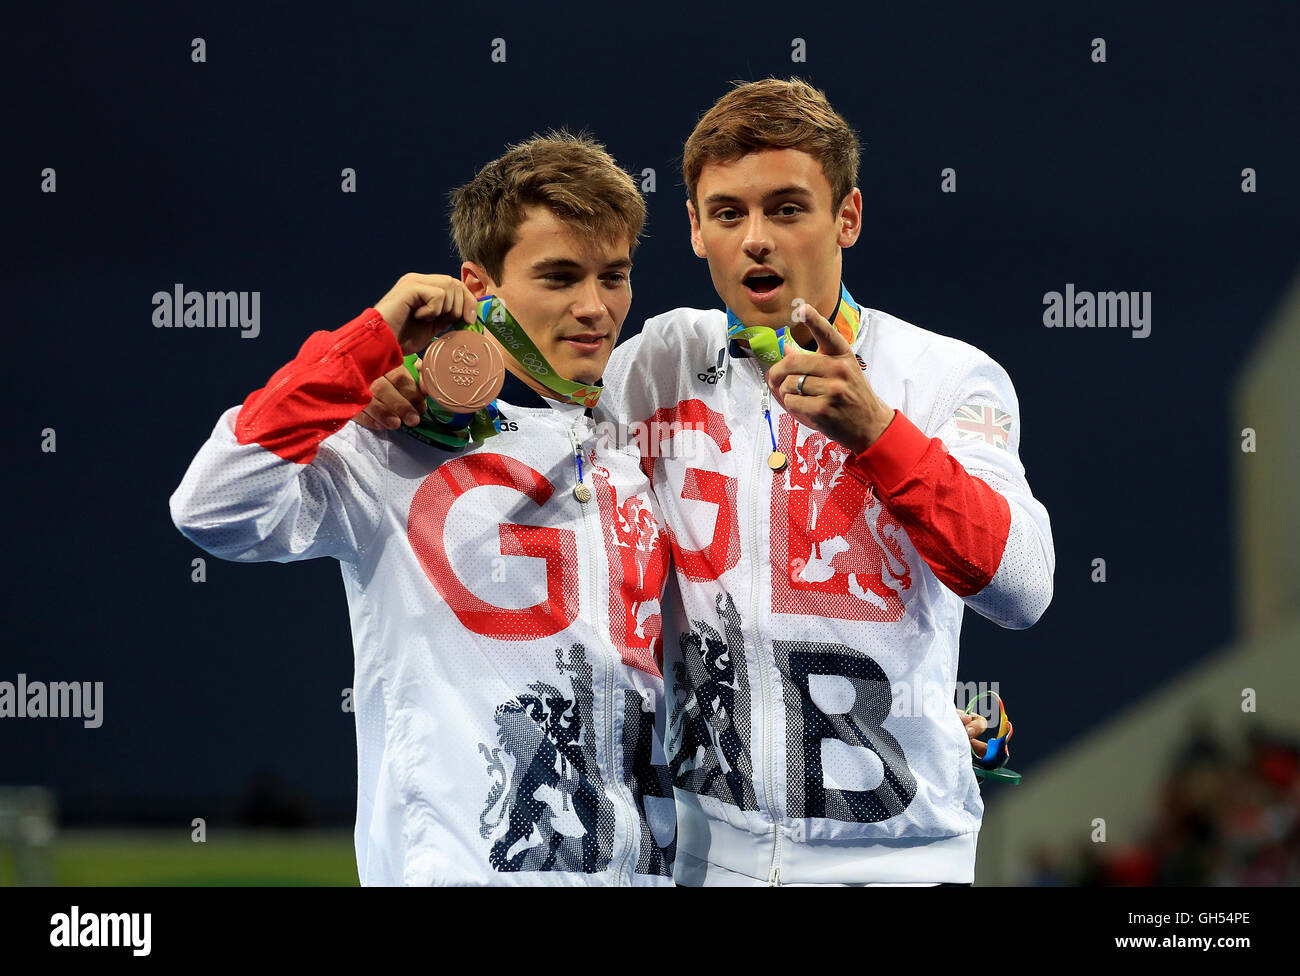 La société britannique Tom Daley (à droite) et Daniel Goodfellow (à gauche) célèbrent avec leurs médailles de bronze après l'hommes 10m synchronisé à la finale de la plate-forme le centre Aquatique Maria Lenk, le troisième jour de la Jeux Olympiques de Rio, au Brésil. Banque D'Images